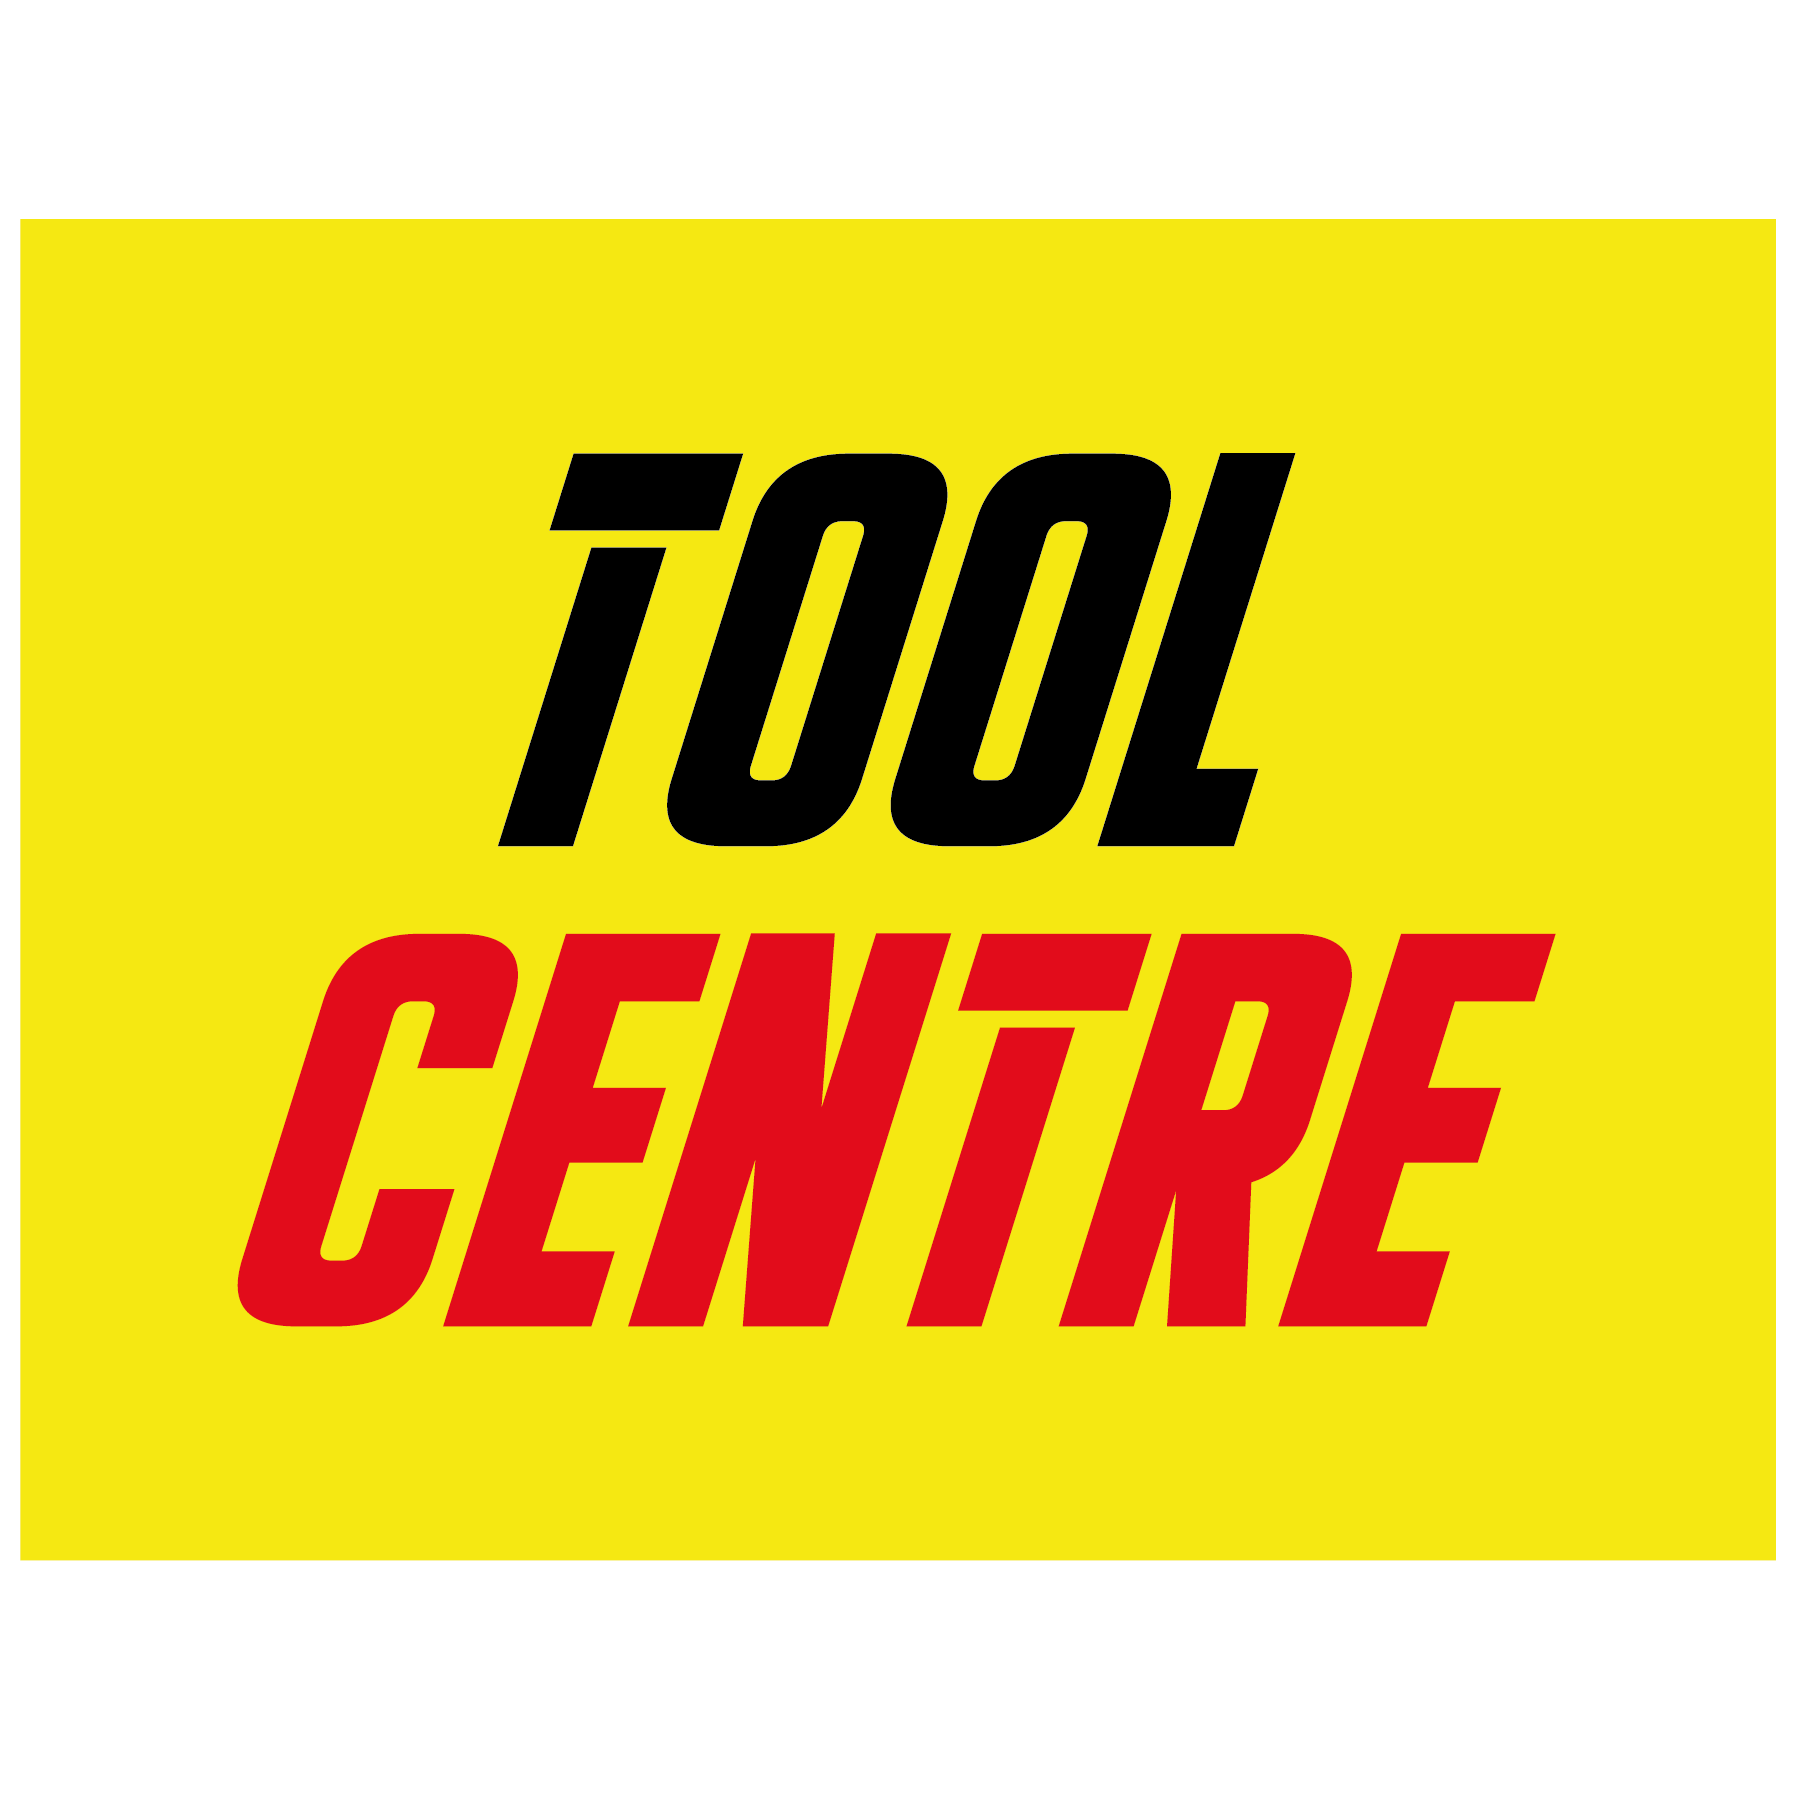 Tool Centre | Bury St Edmunds - Bury St. Edmunds, Essex IP32 6TP - 01284 731545 | ShowMeLocal.com